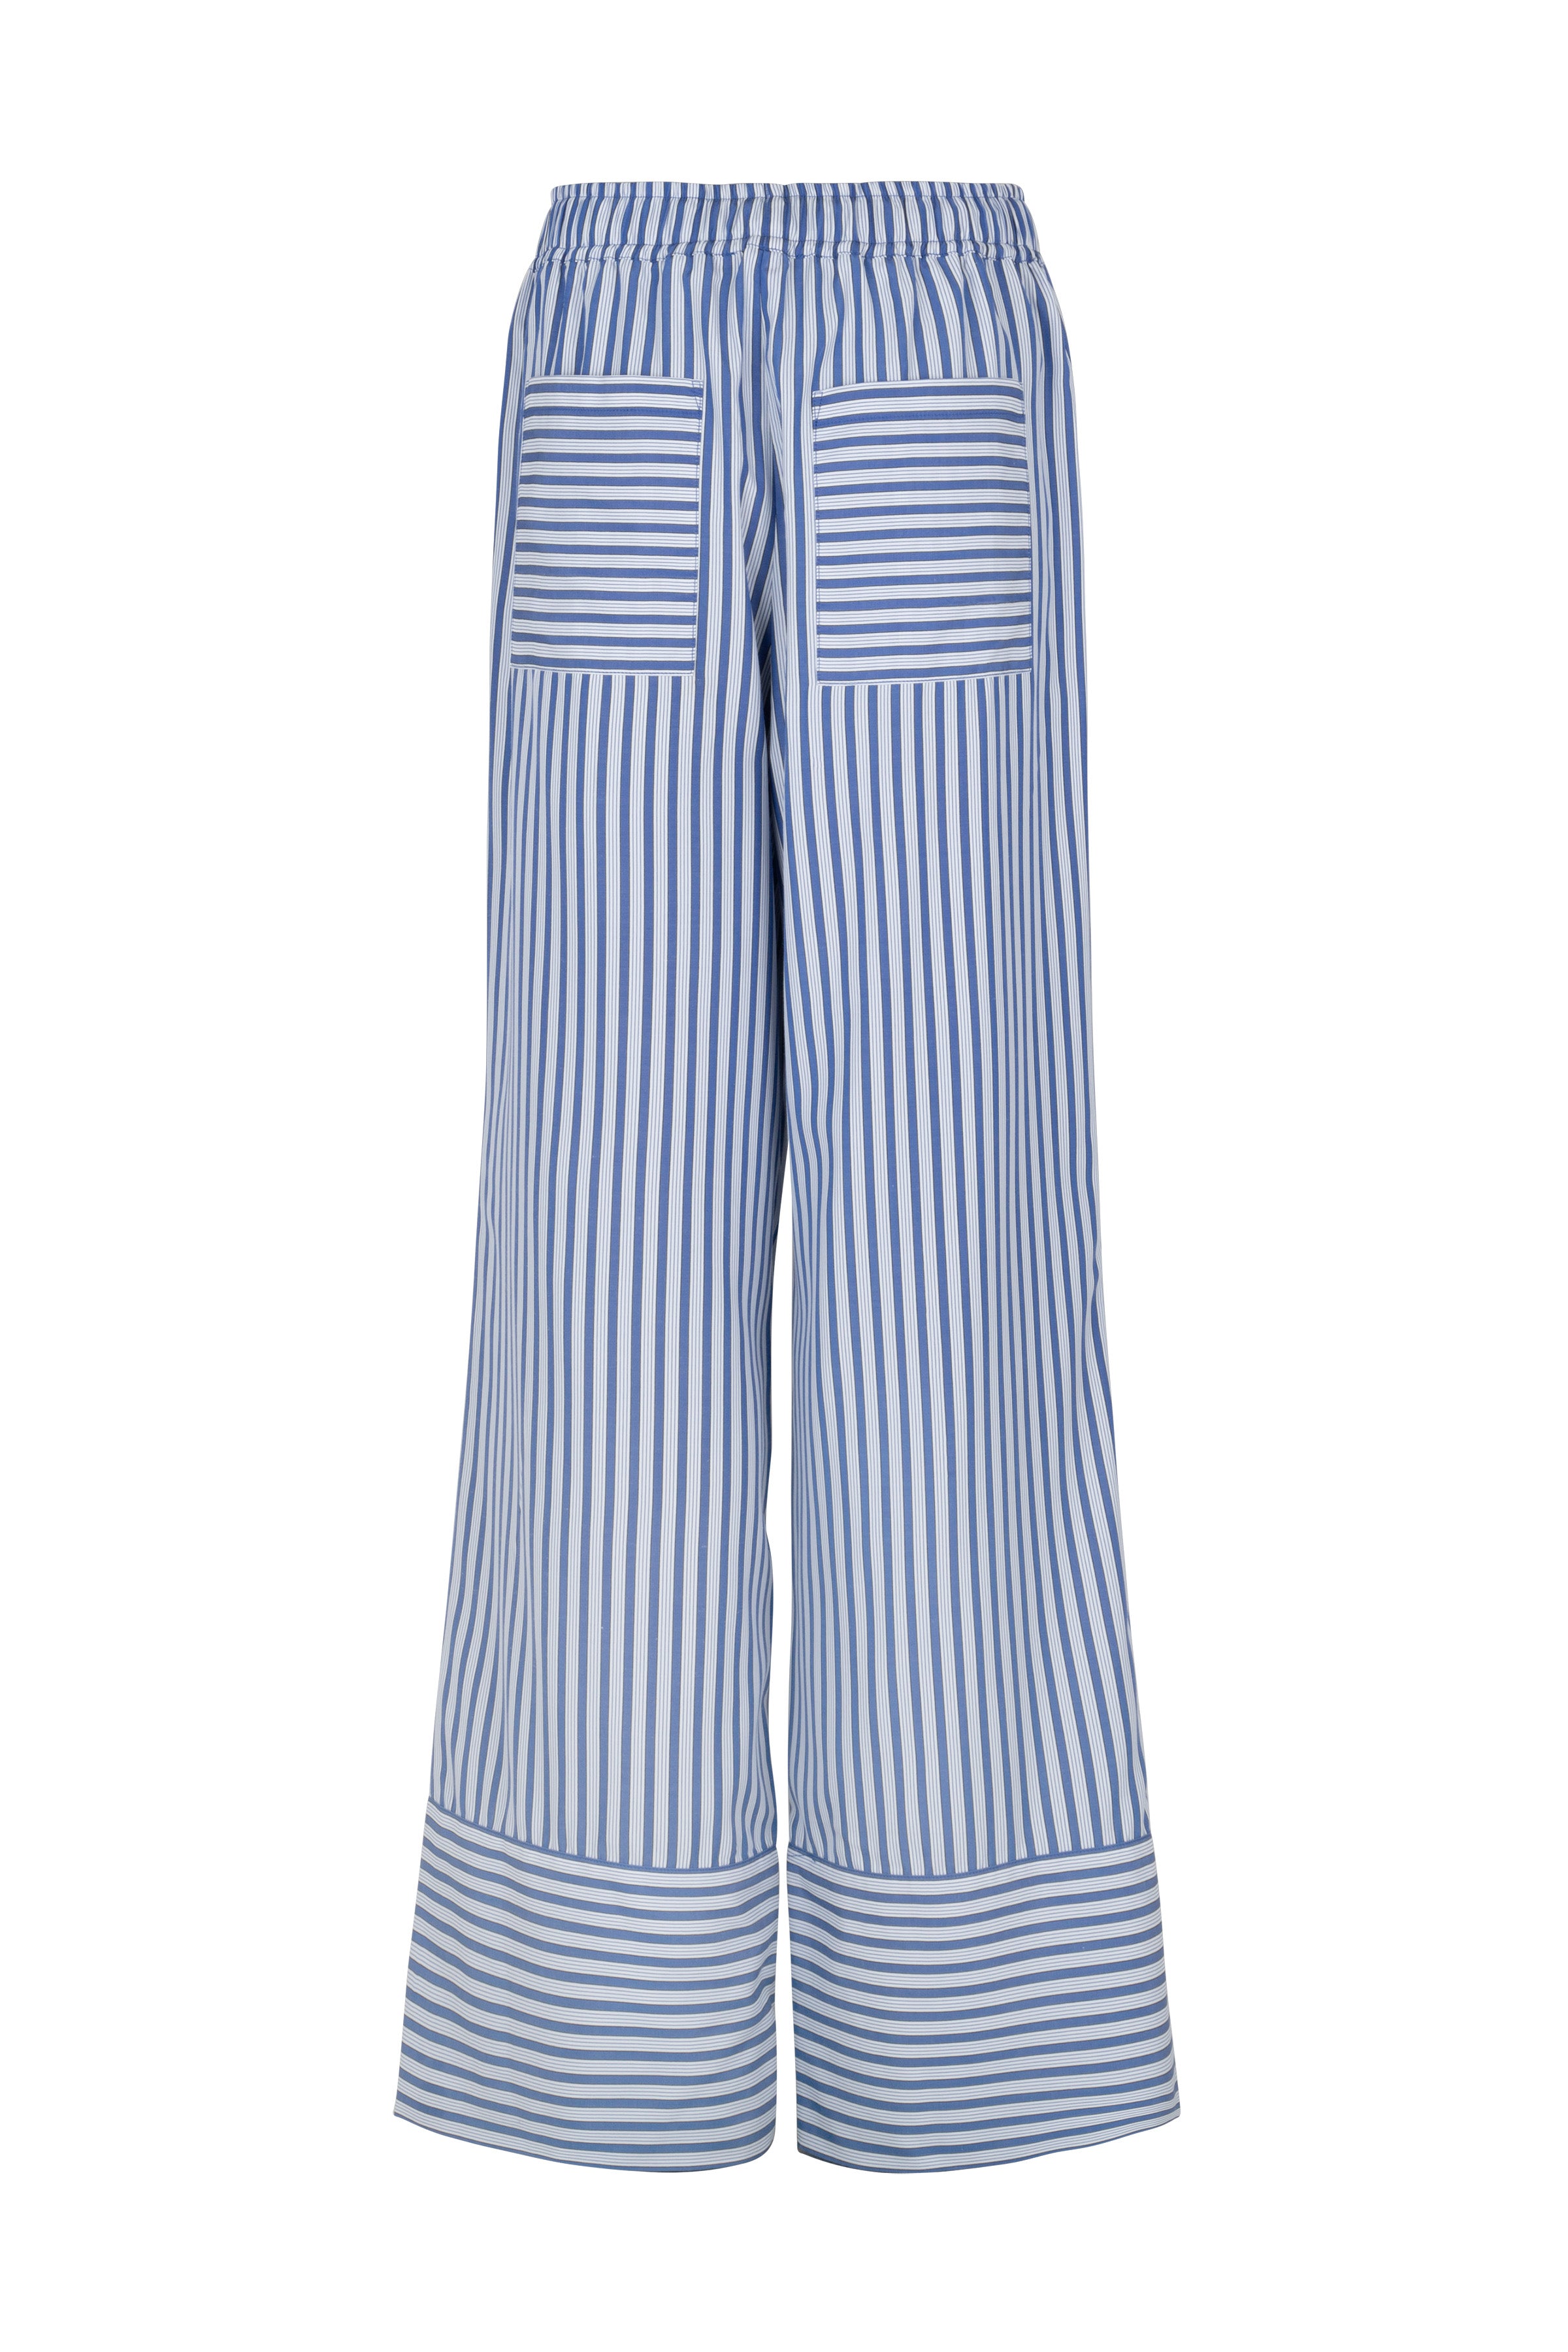 CRAS Day Pants Pants 8009 Dark Blue Stripe